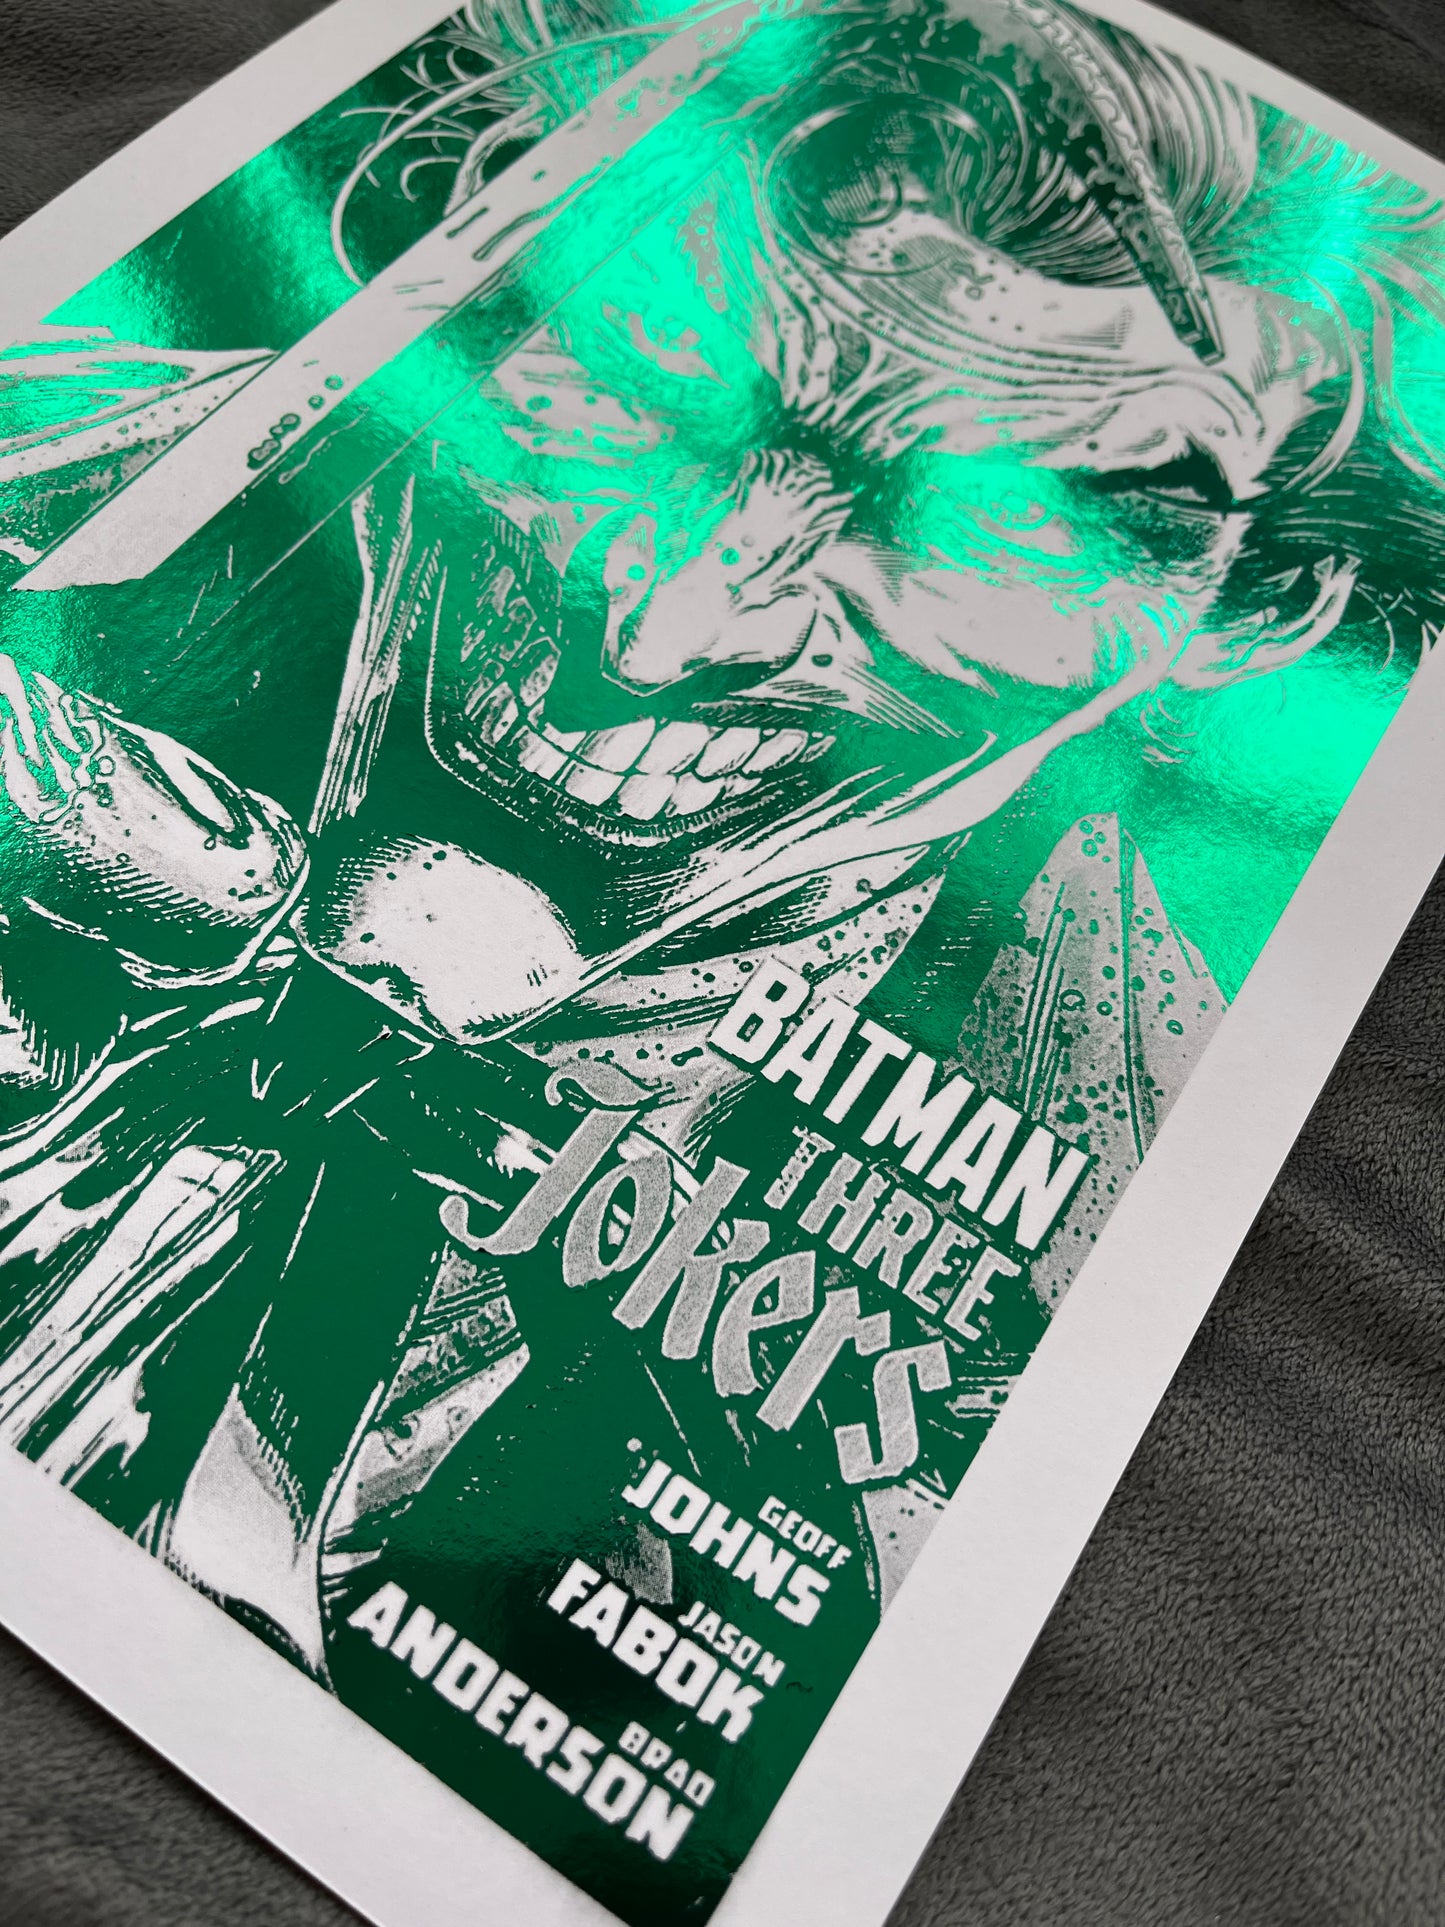 Joker Foil Print